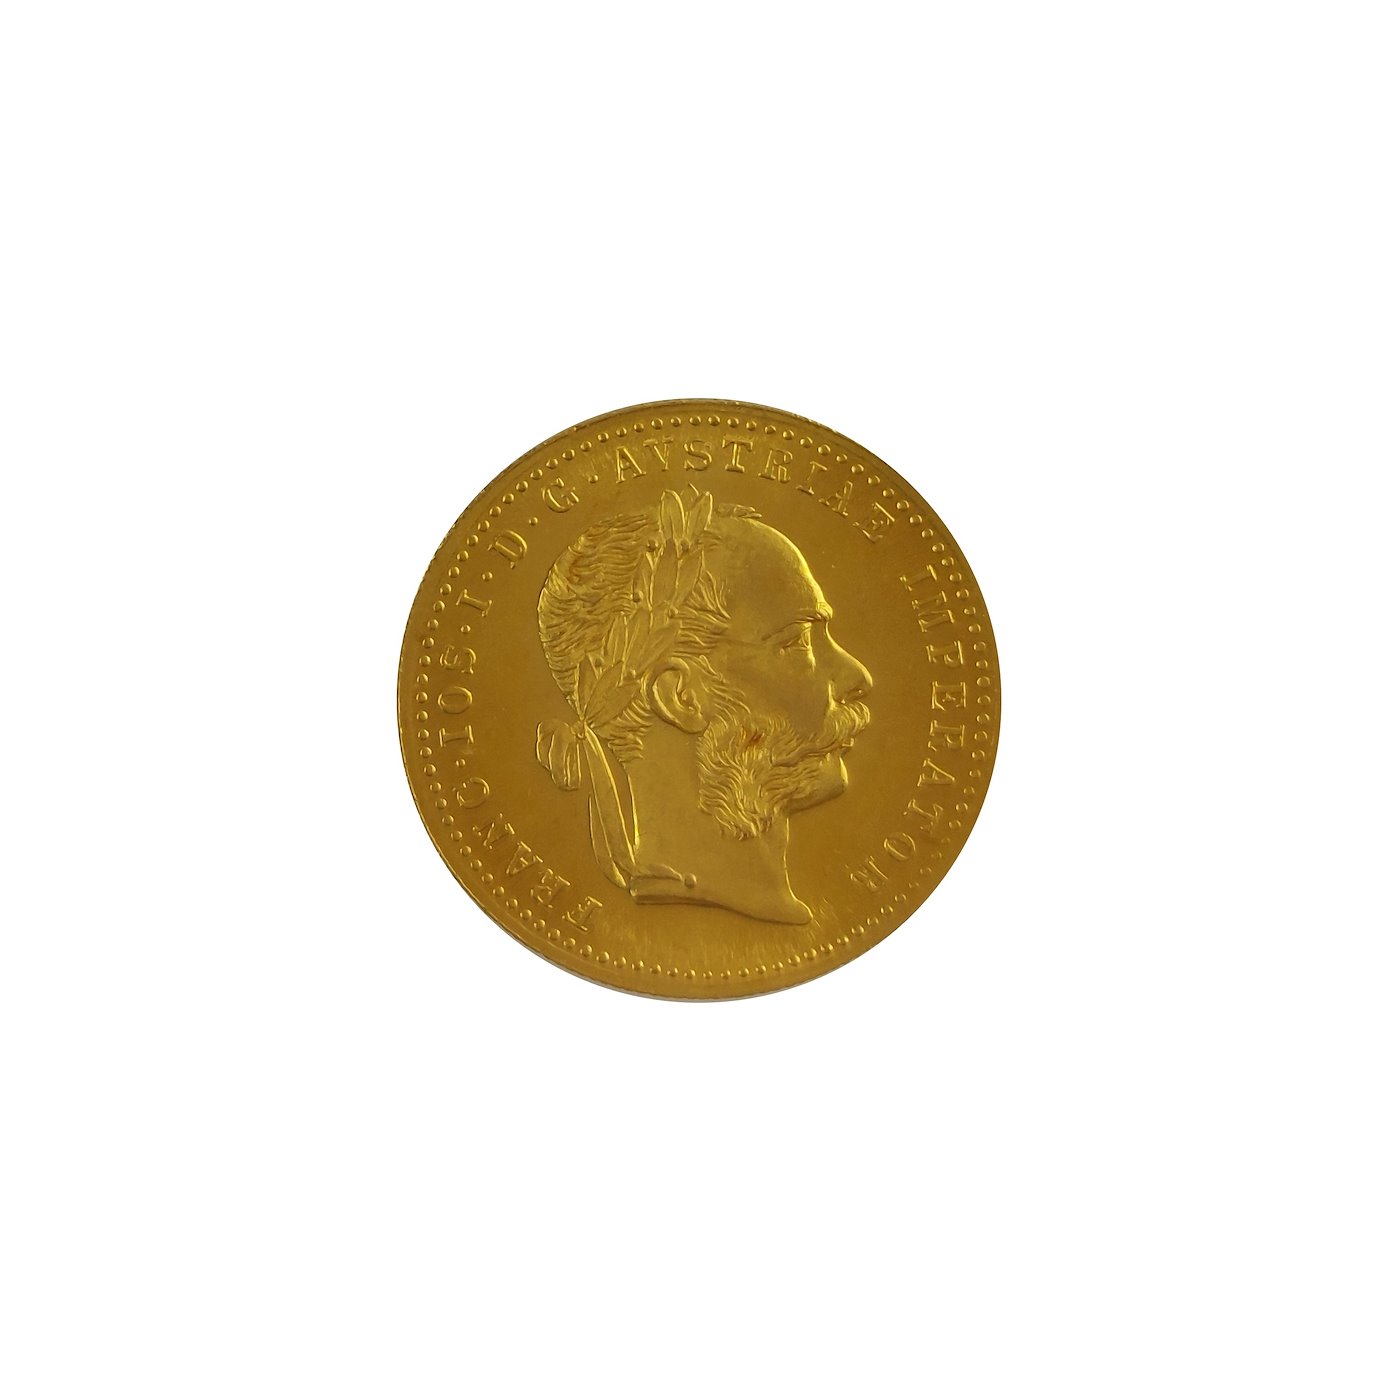 .. - Rakousko Uhersko zlatý 1 dukát 1915 novější pokračující ražba